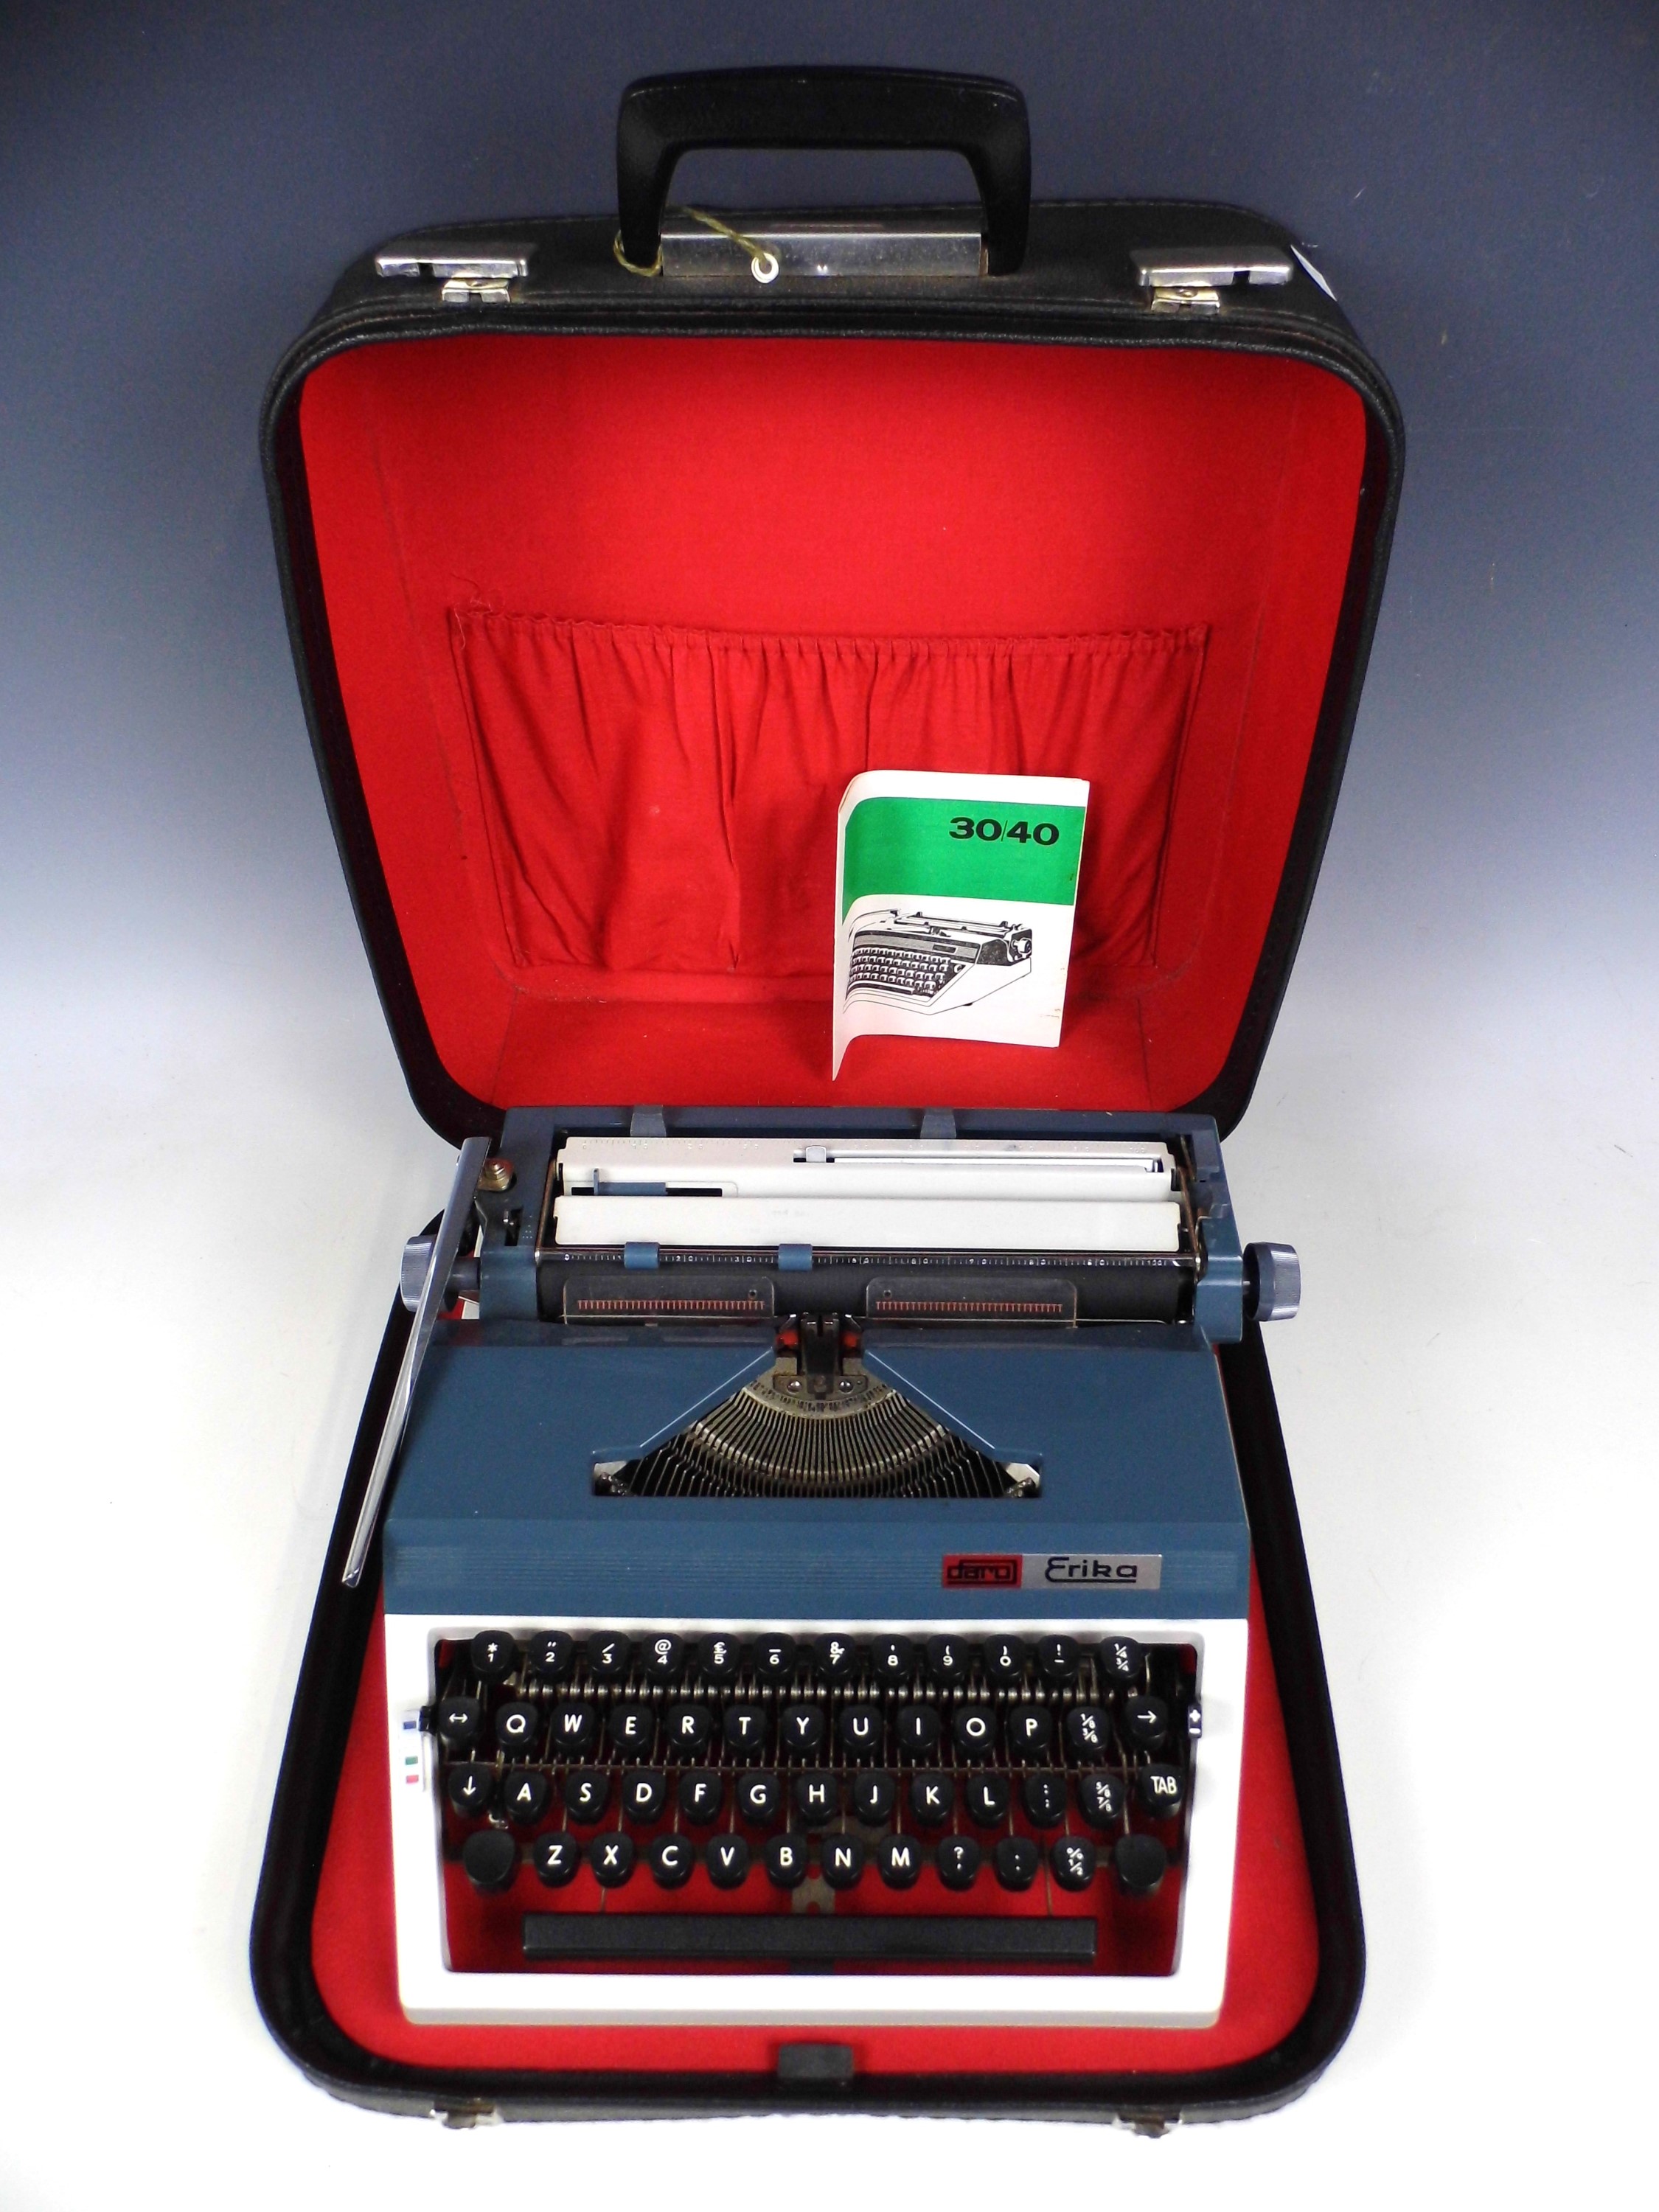 A vintage Daro Erika portable typewriter